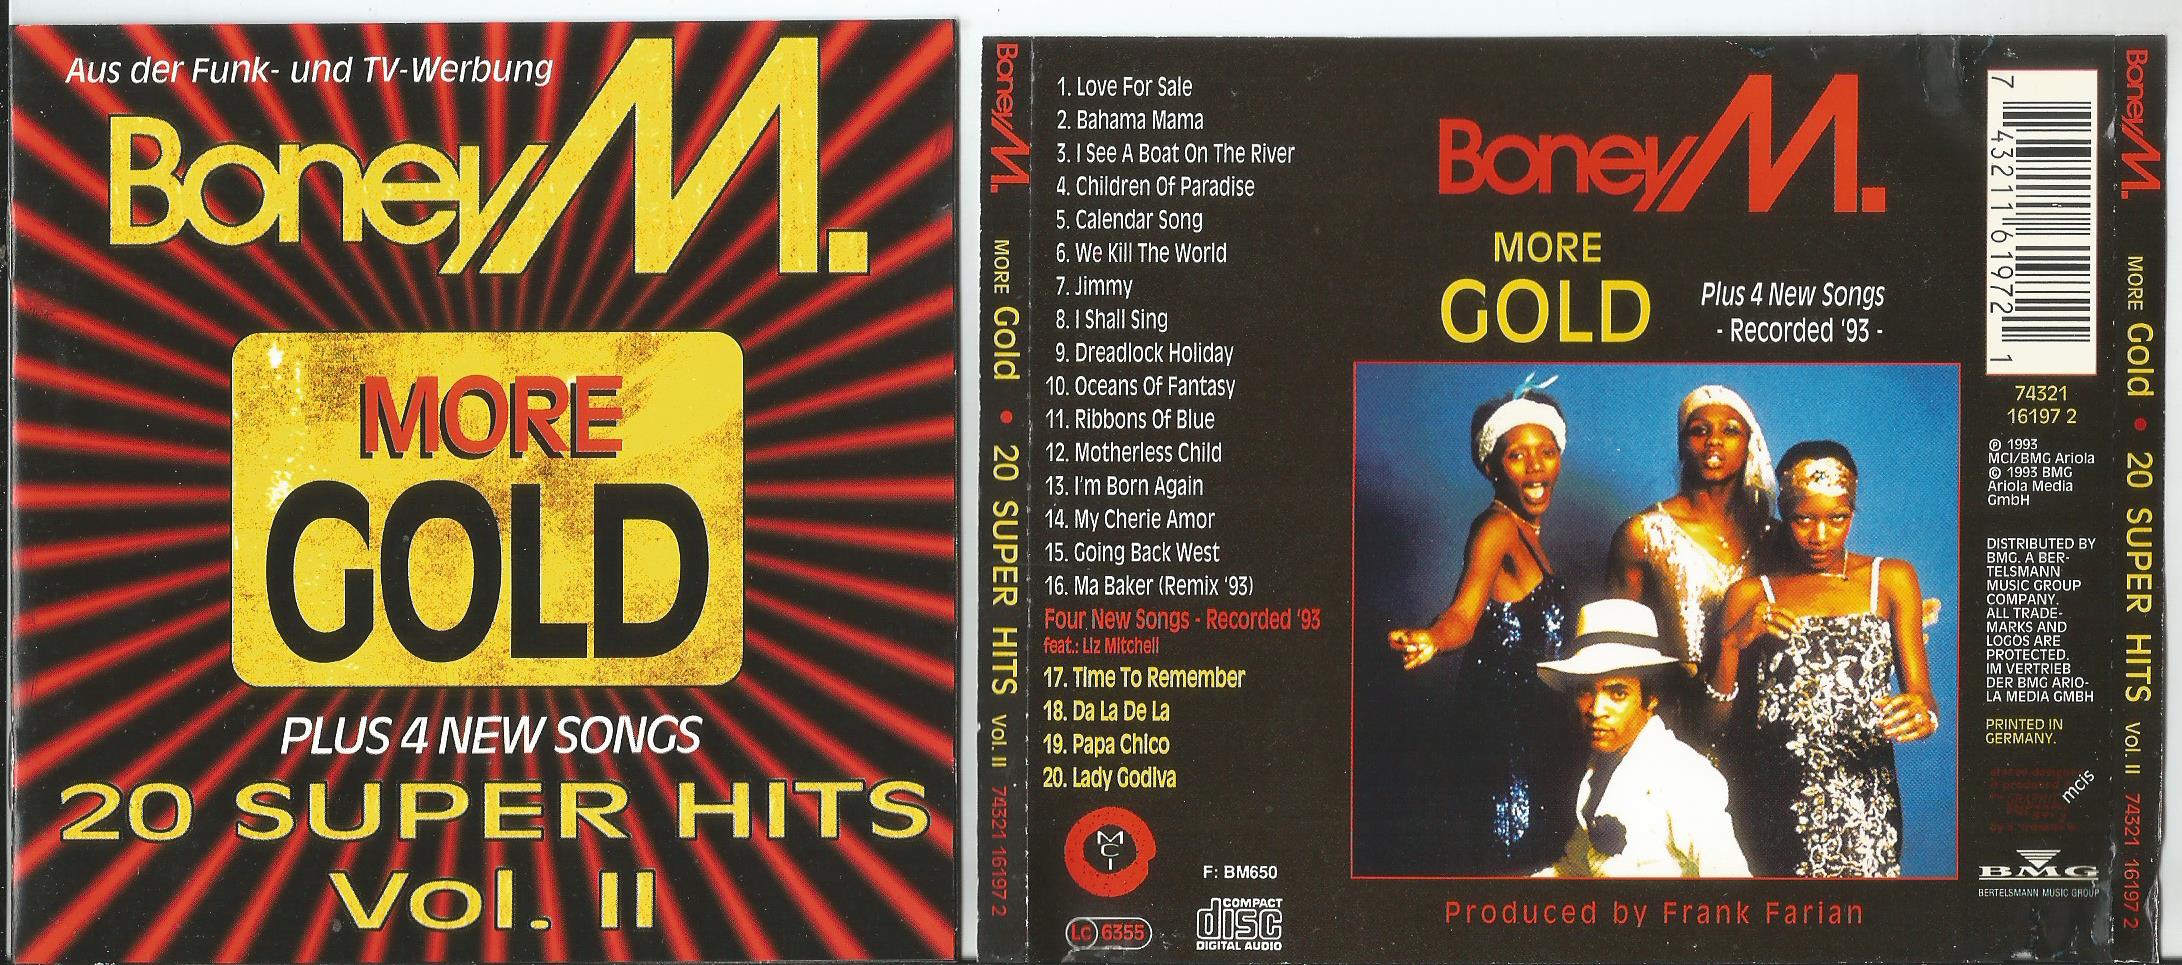 Gold mp3. Boney m.] more Gold - 20 super Hits Vol. 2. Boney m 20 super Hits 2. Boney m Gold 20 super Hits 1992. Boney m Gold 20 super Hits 2.